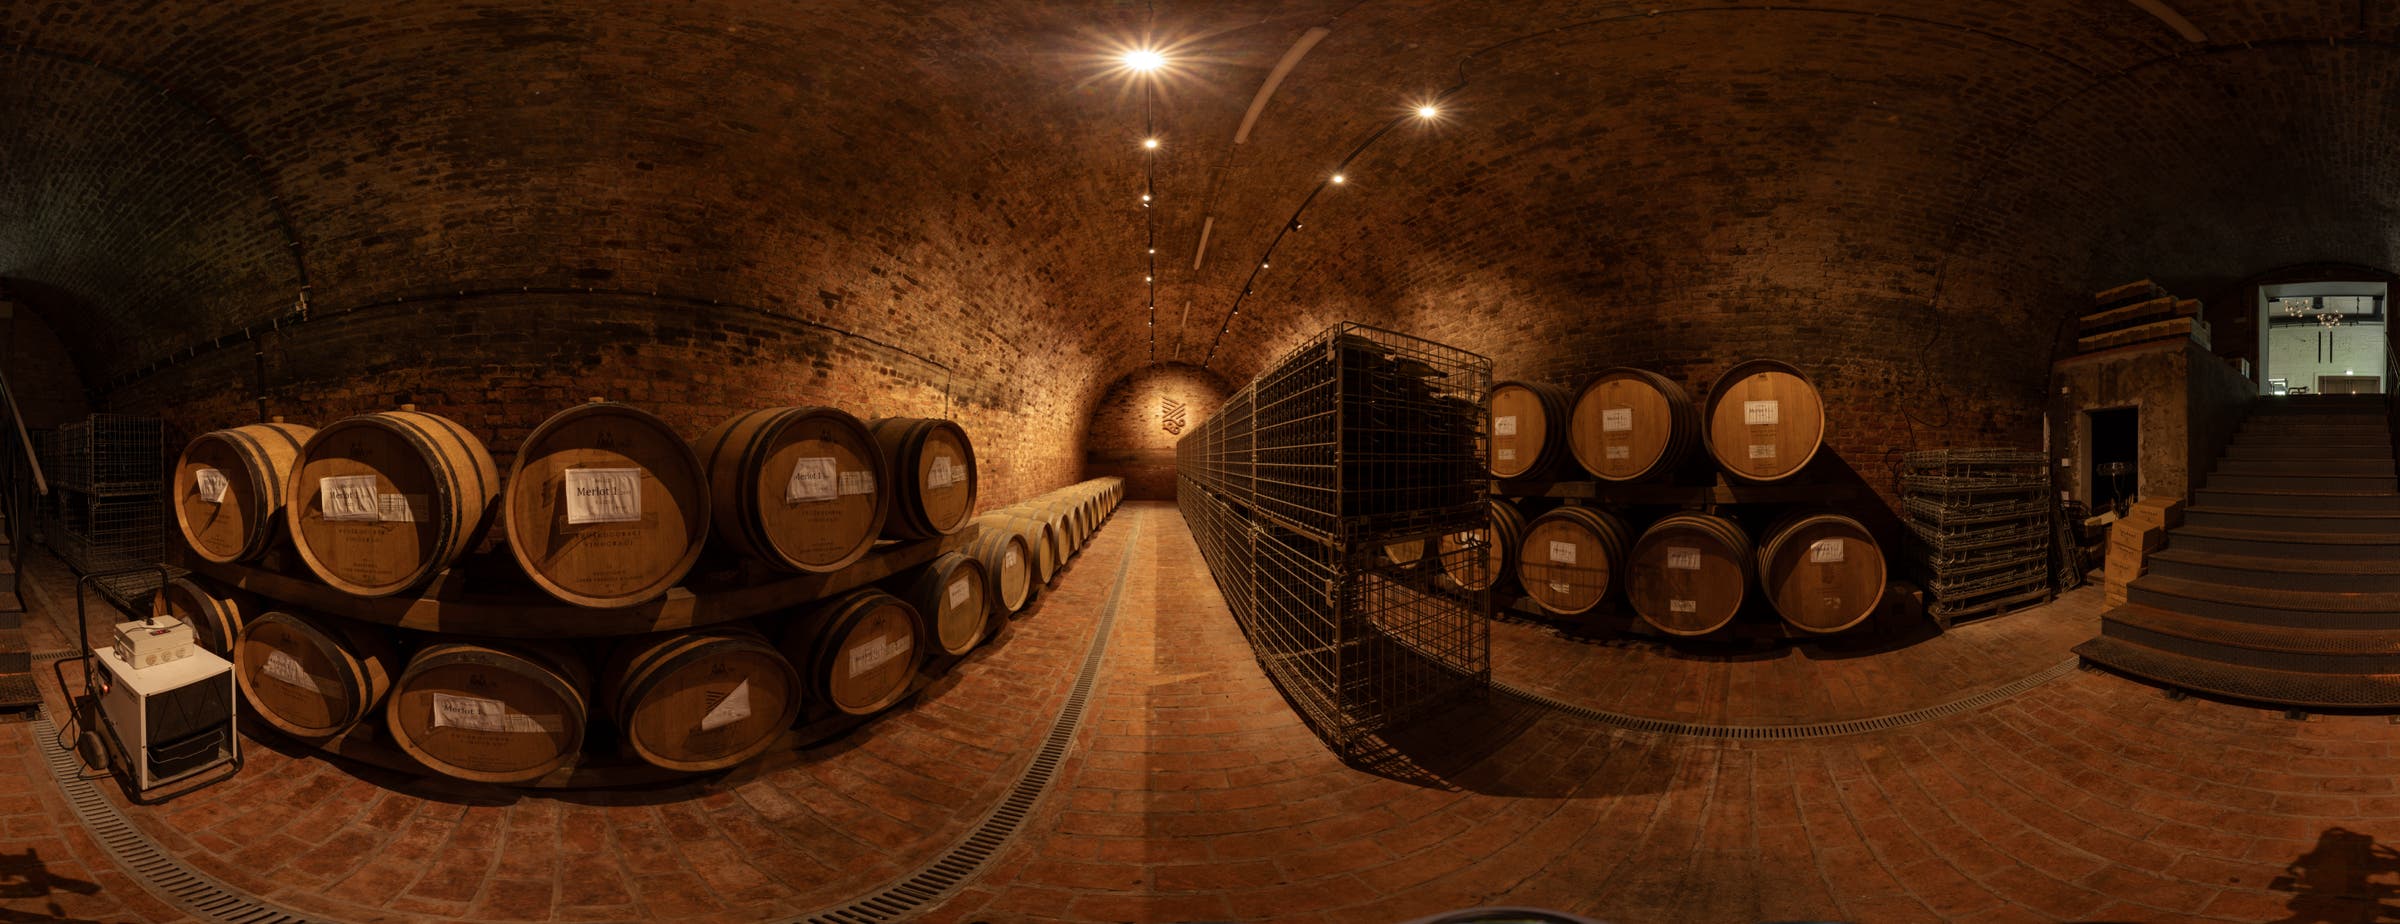 Das Bild zeigt eine 360°-Ansicht eines Weinkellers, der zur Lagerung von Fässern entlang der Wände dient. In der Mitte der Halle, entlang des Ganges, sind Metallkästen für die Lagerung von Glasflaschen mit Wein aufgestellt.